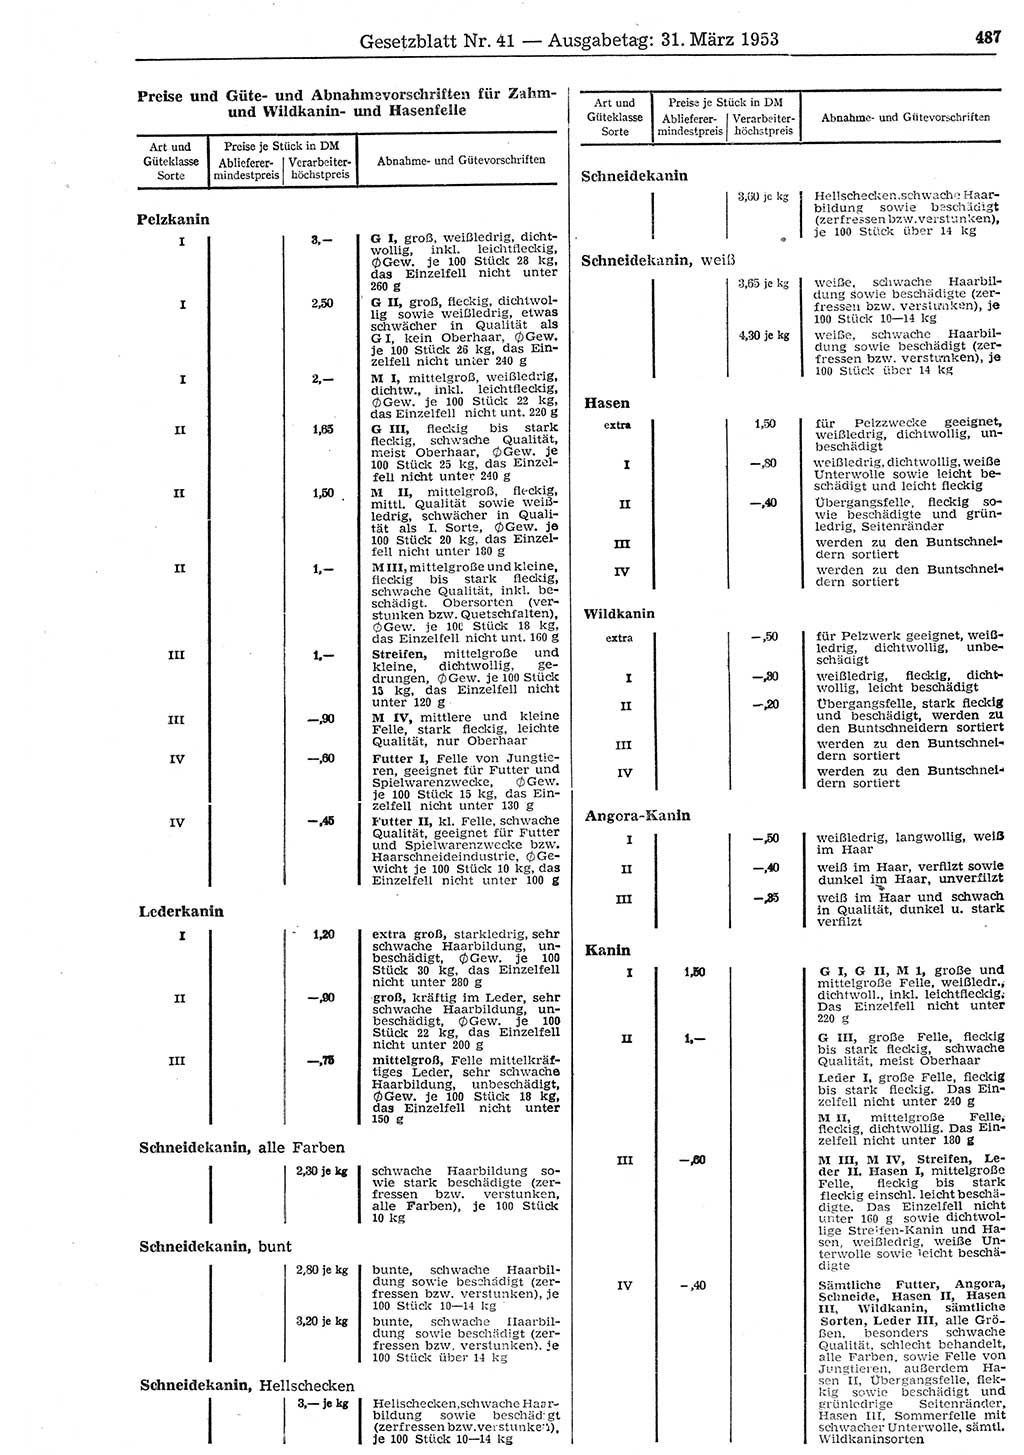 Gesetzblatt (GBl.) der Deutschen Demokratischen Republik (DDR) 1953, Seite 487 (GBl. DDR 1953, S. 487)